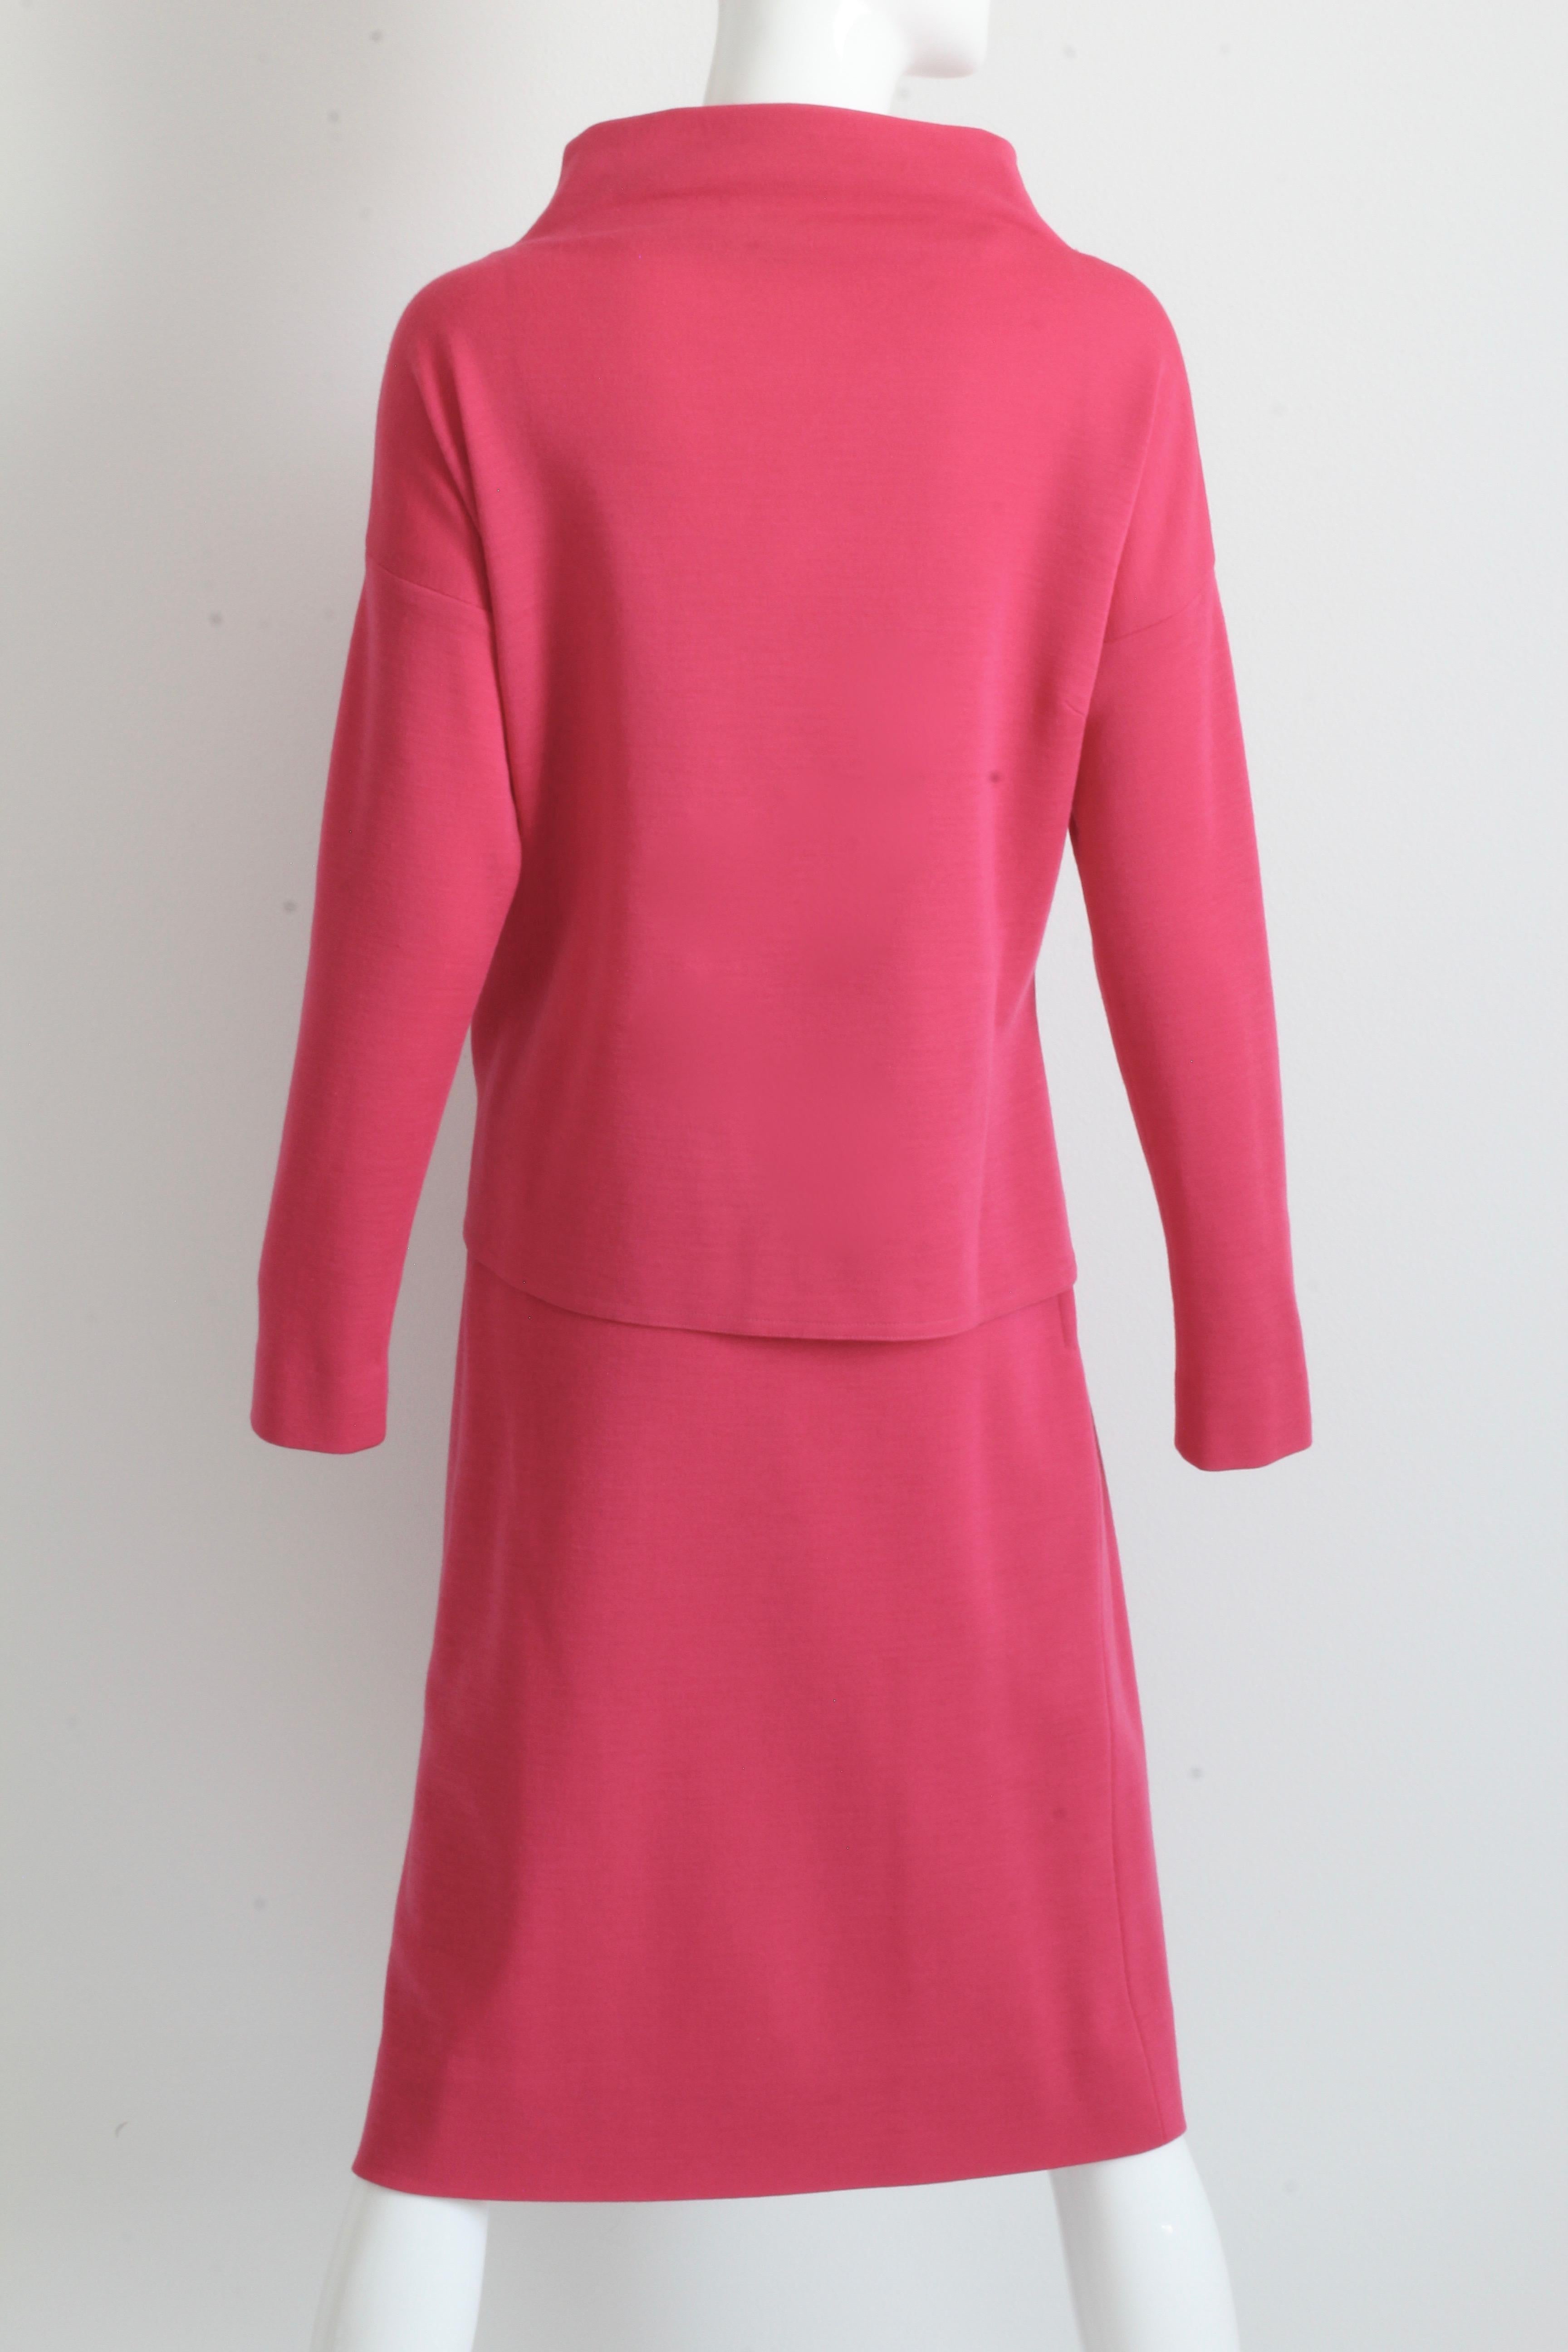 Women's Bonnie Cashin Suit Pink Knit 2pc Set Raglan Top and Skirt Vintage 1960s For Sale